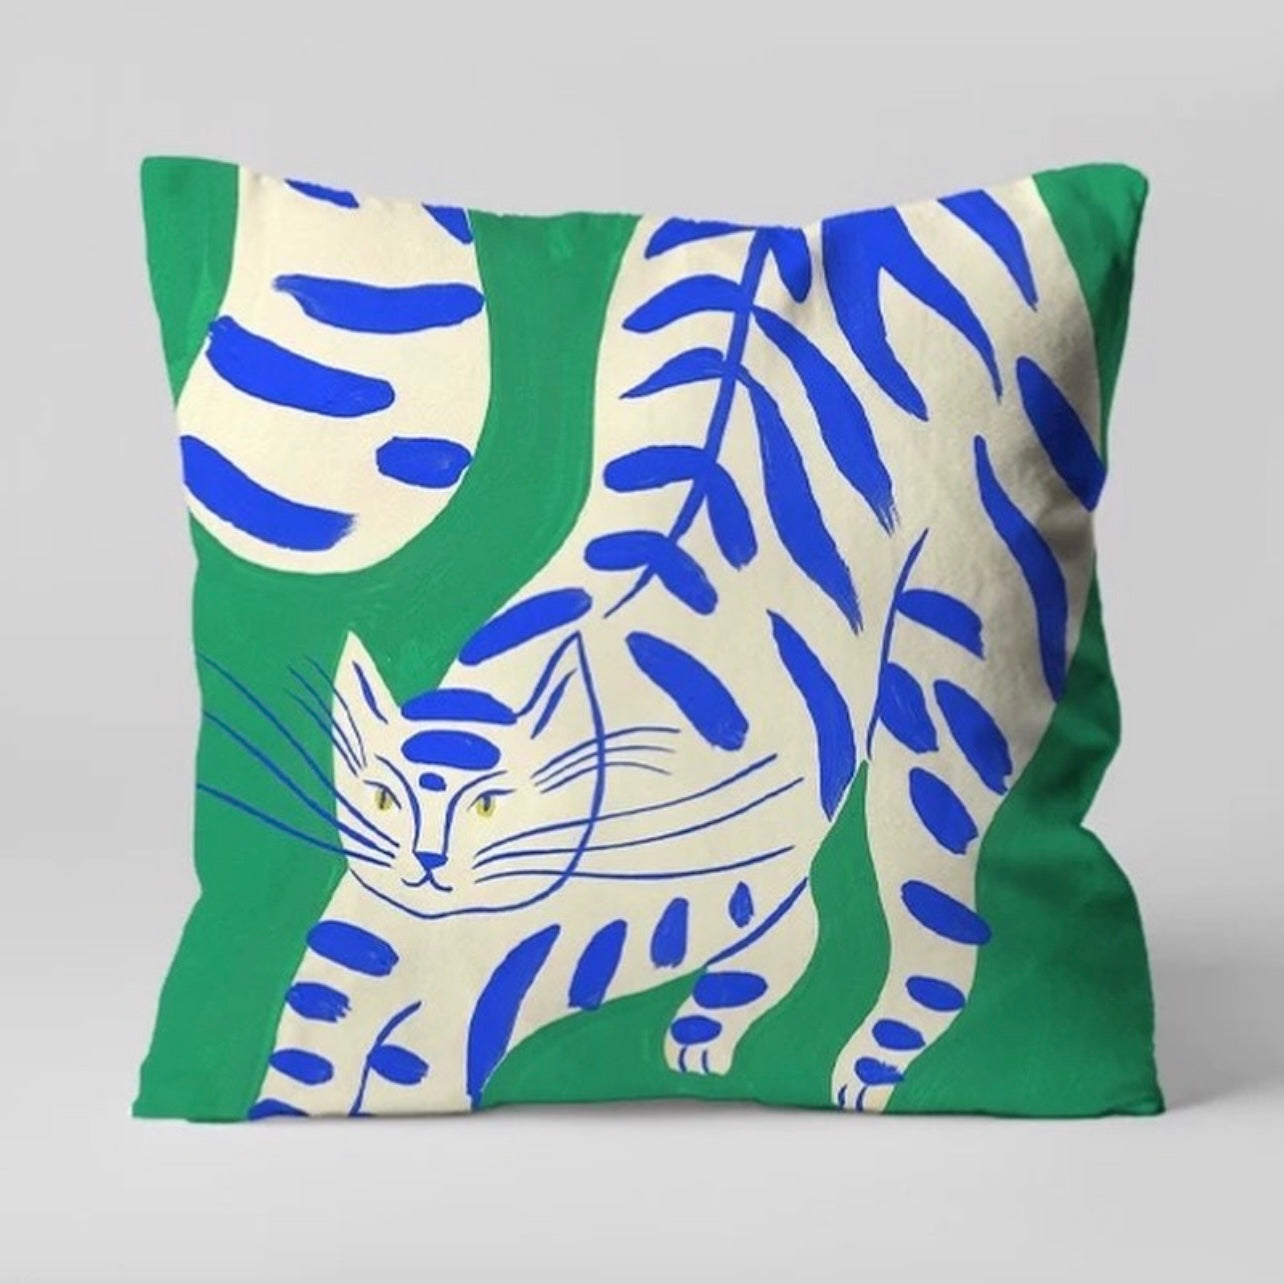 Hommie Artistic Cat Pillow Set HBSF012